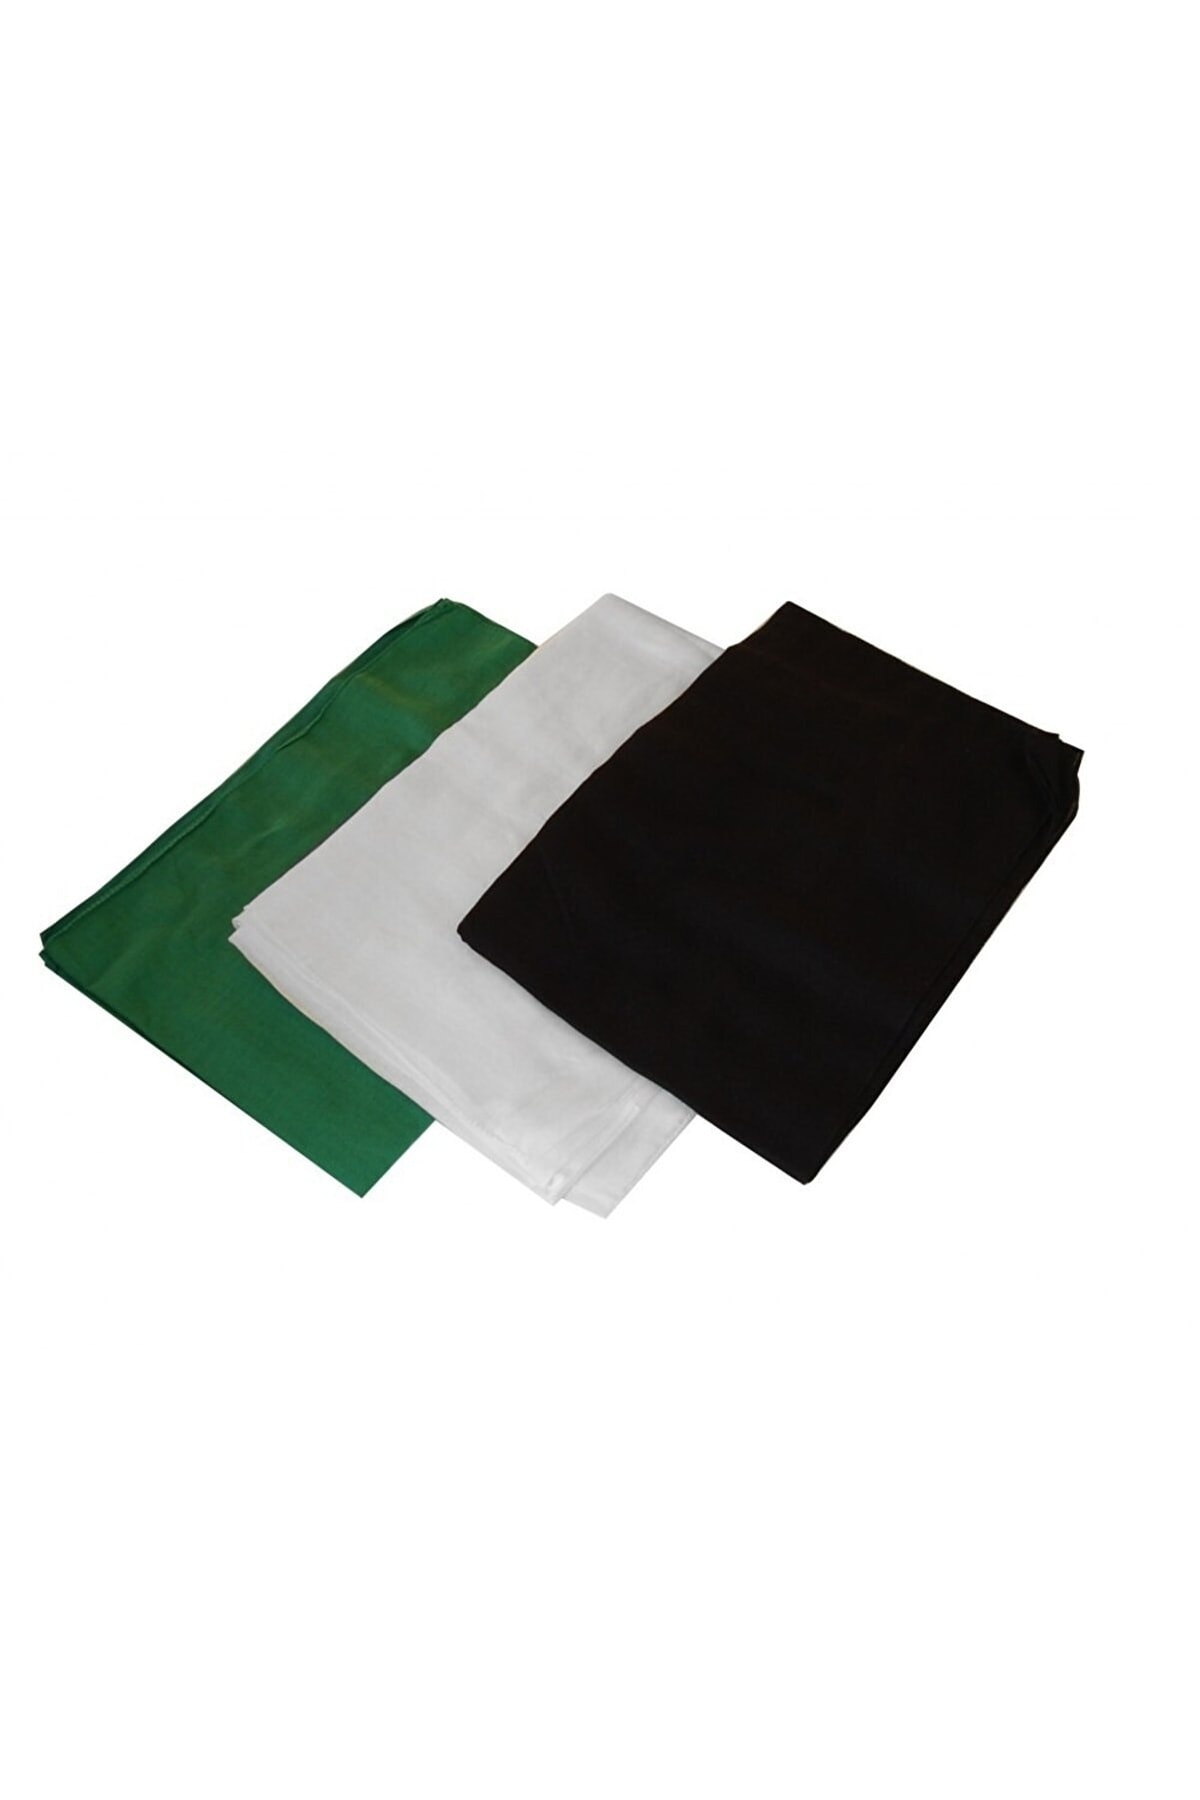 İslam Yayın Hediyelik Dolama Sarık Bezi Yeşil,beyaz,siyah,renk - 3 Lü Set 4 Adet